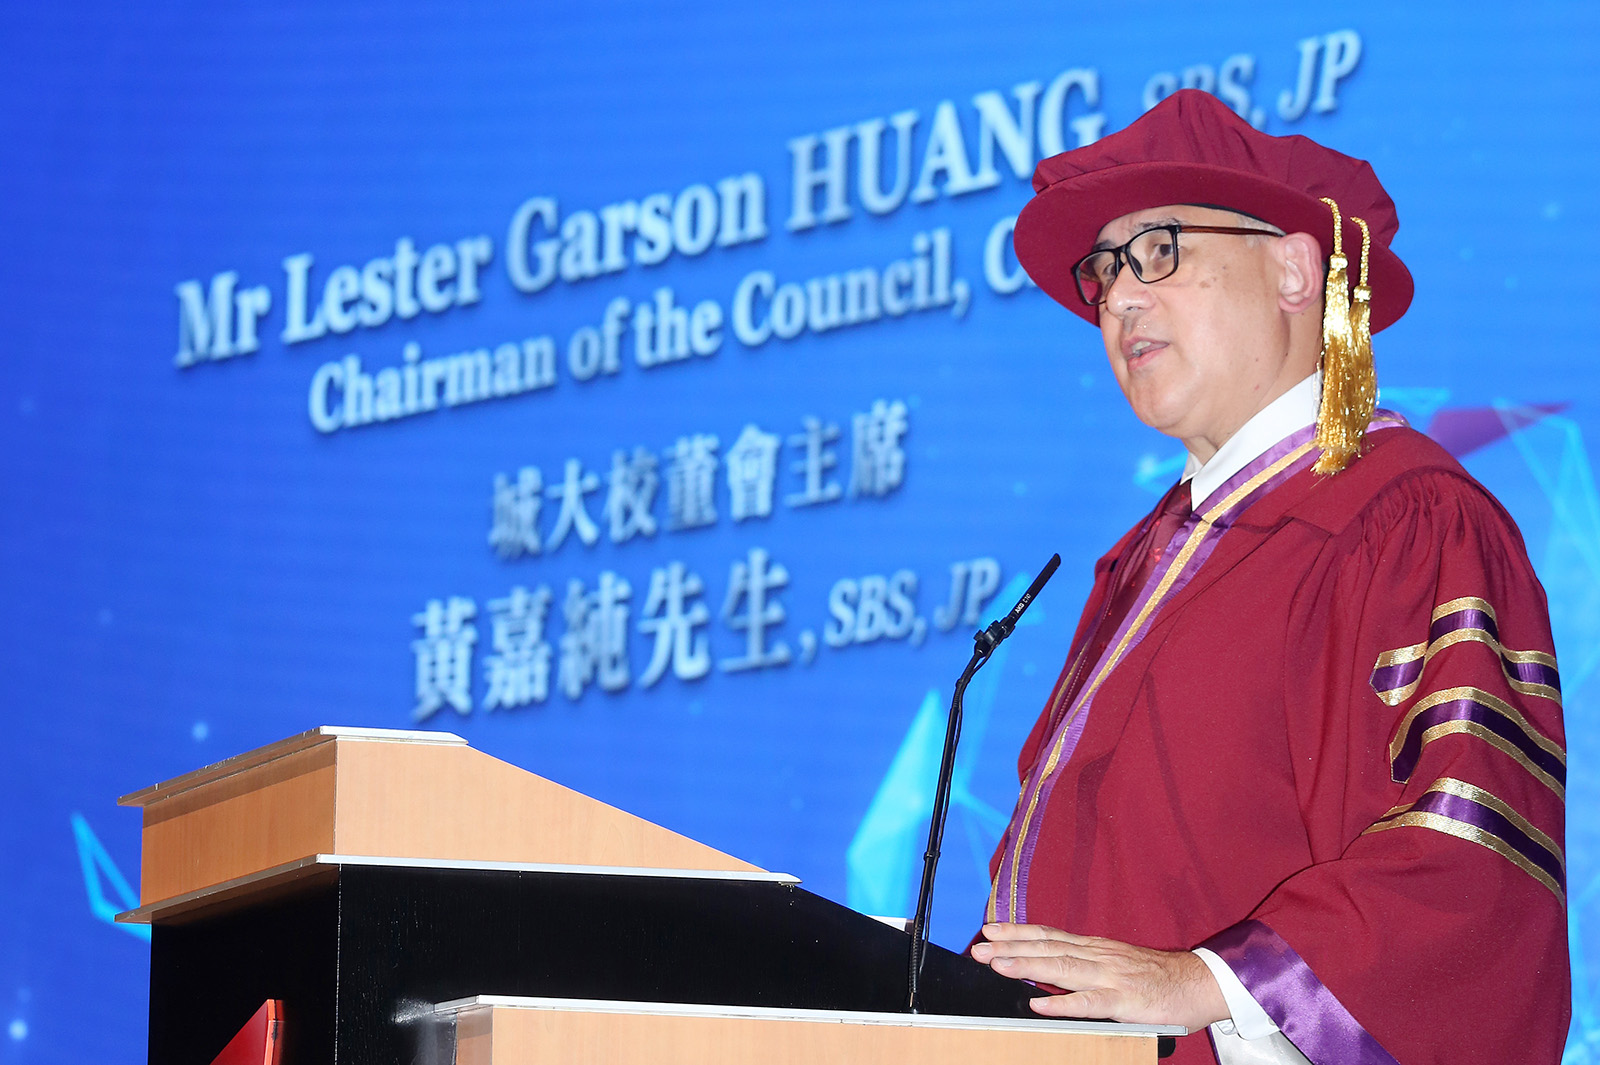 Mr Lester Garson Huang